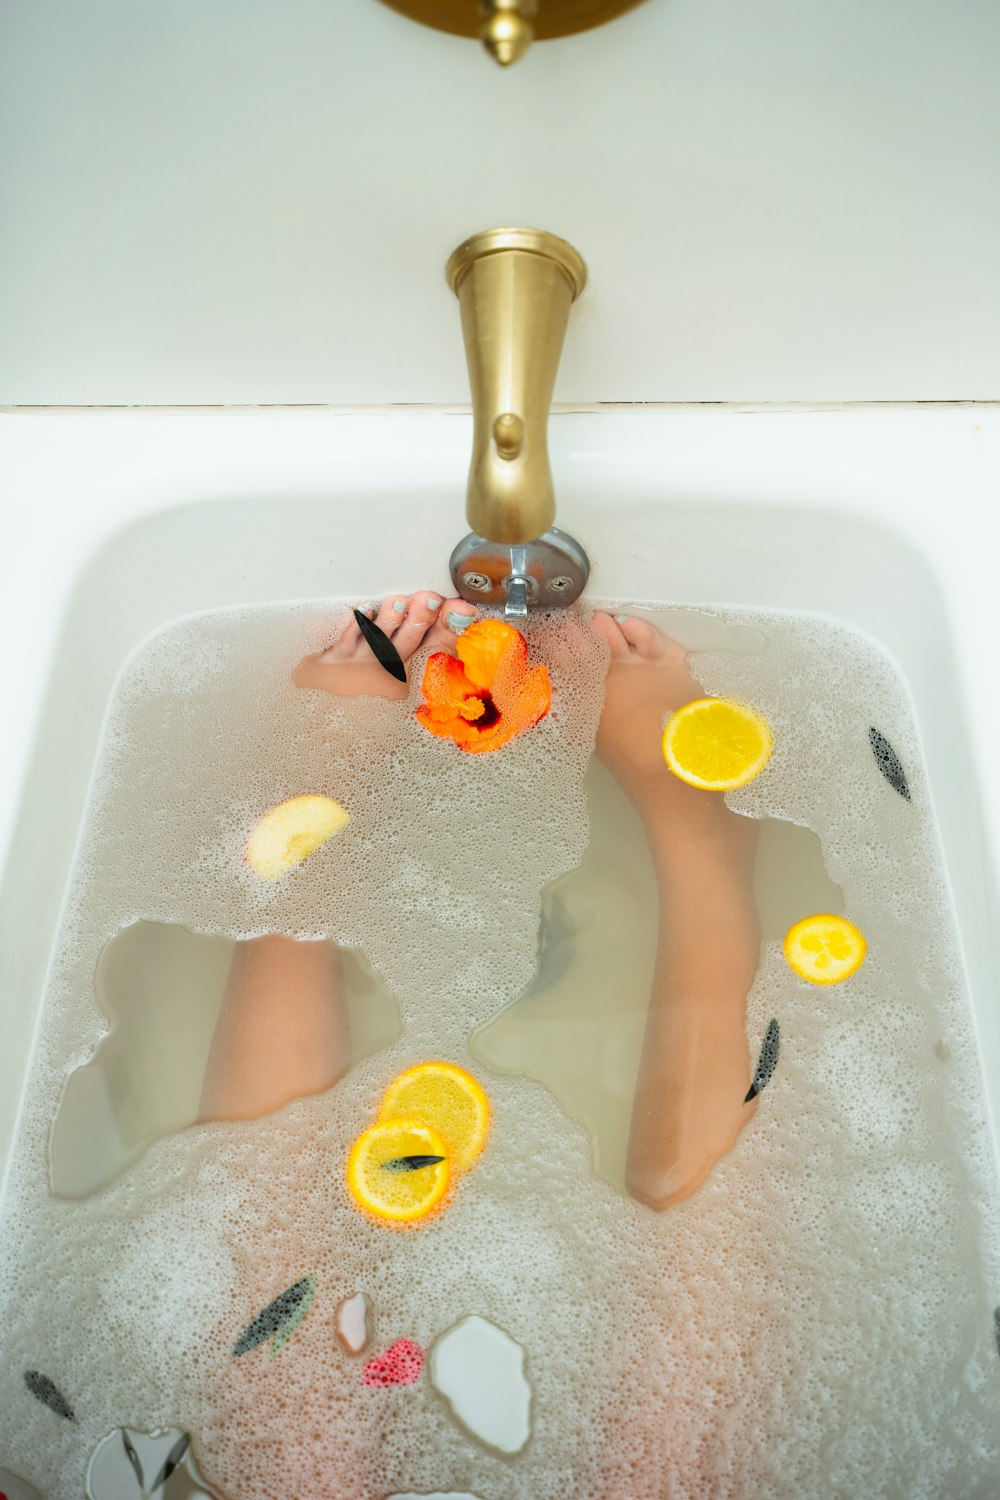 un enfant dans une baignoire avec des oranges et un robinet